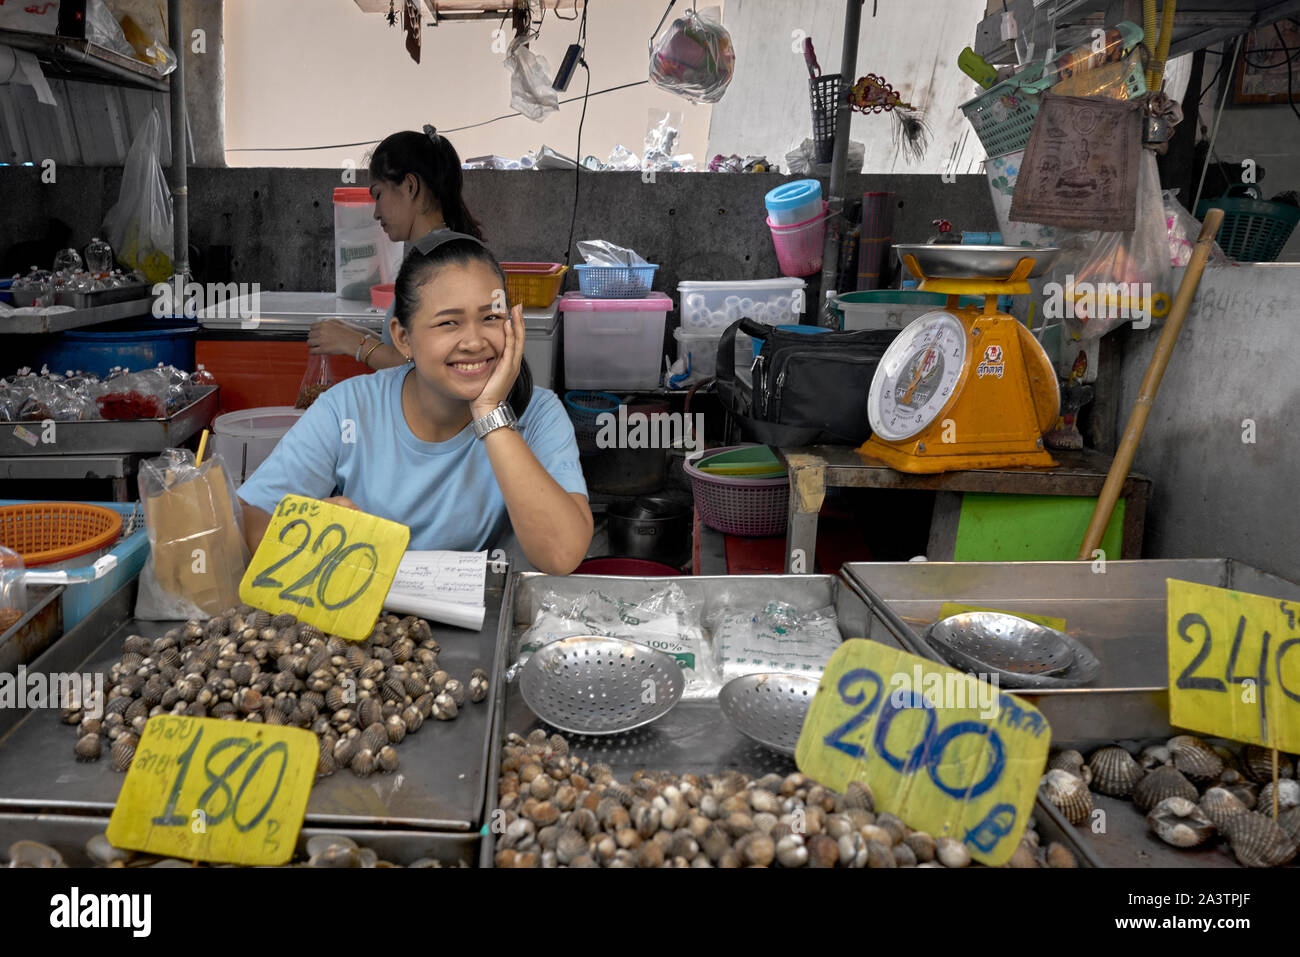 Thaïlande sourire. Femme heureuse et souriante fournisseur de nourriture thaïlandaise à son décrochage du marché. Thaïlande S. E. Asie. Femme asiatique souriante Banque D'Images